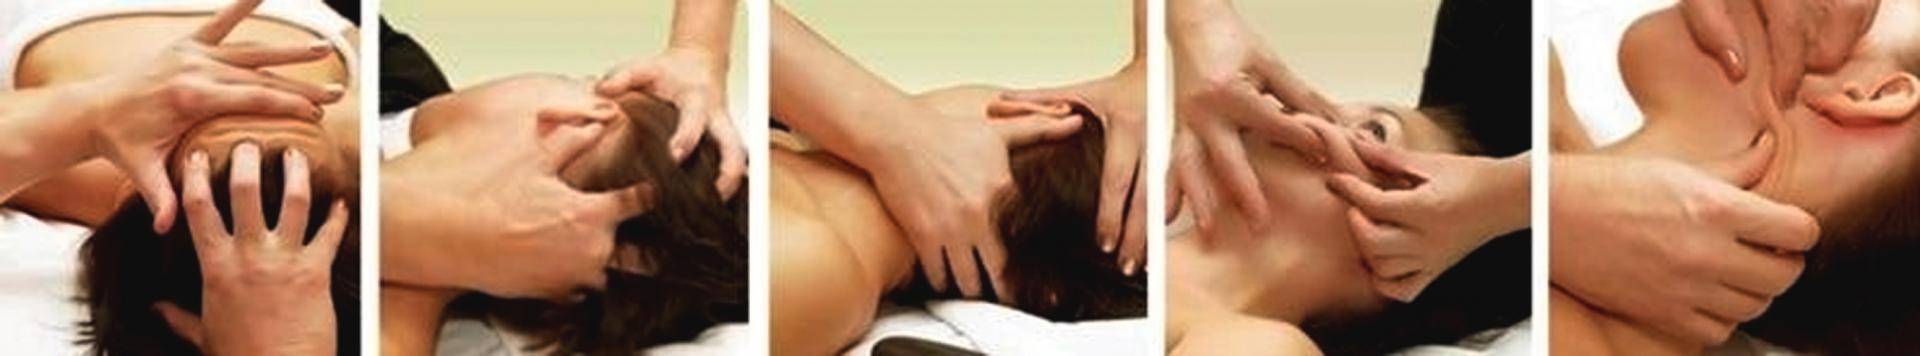 Миофасциальный массаж - что это, особенности, противопоказания